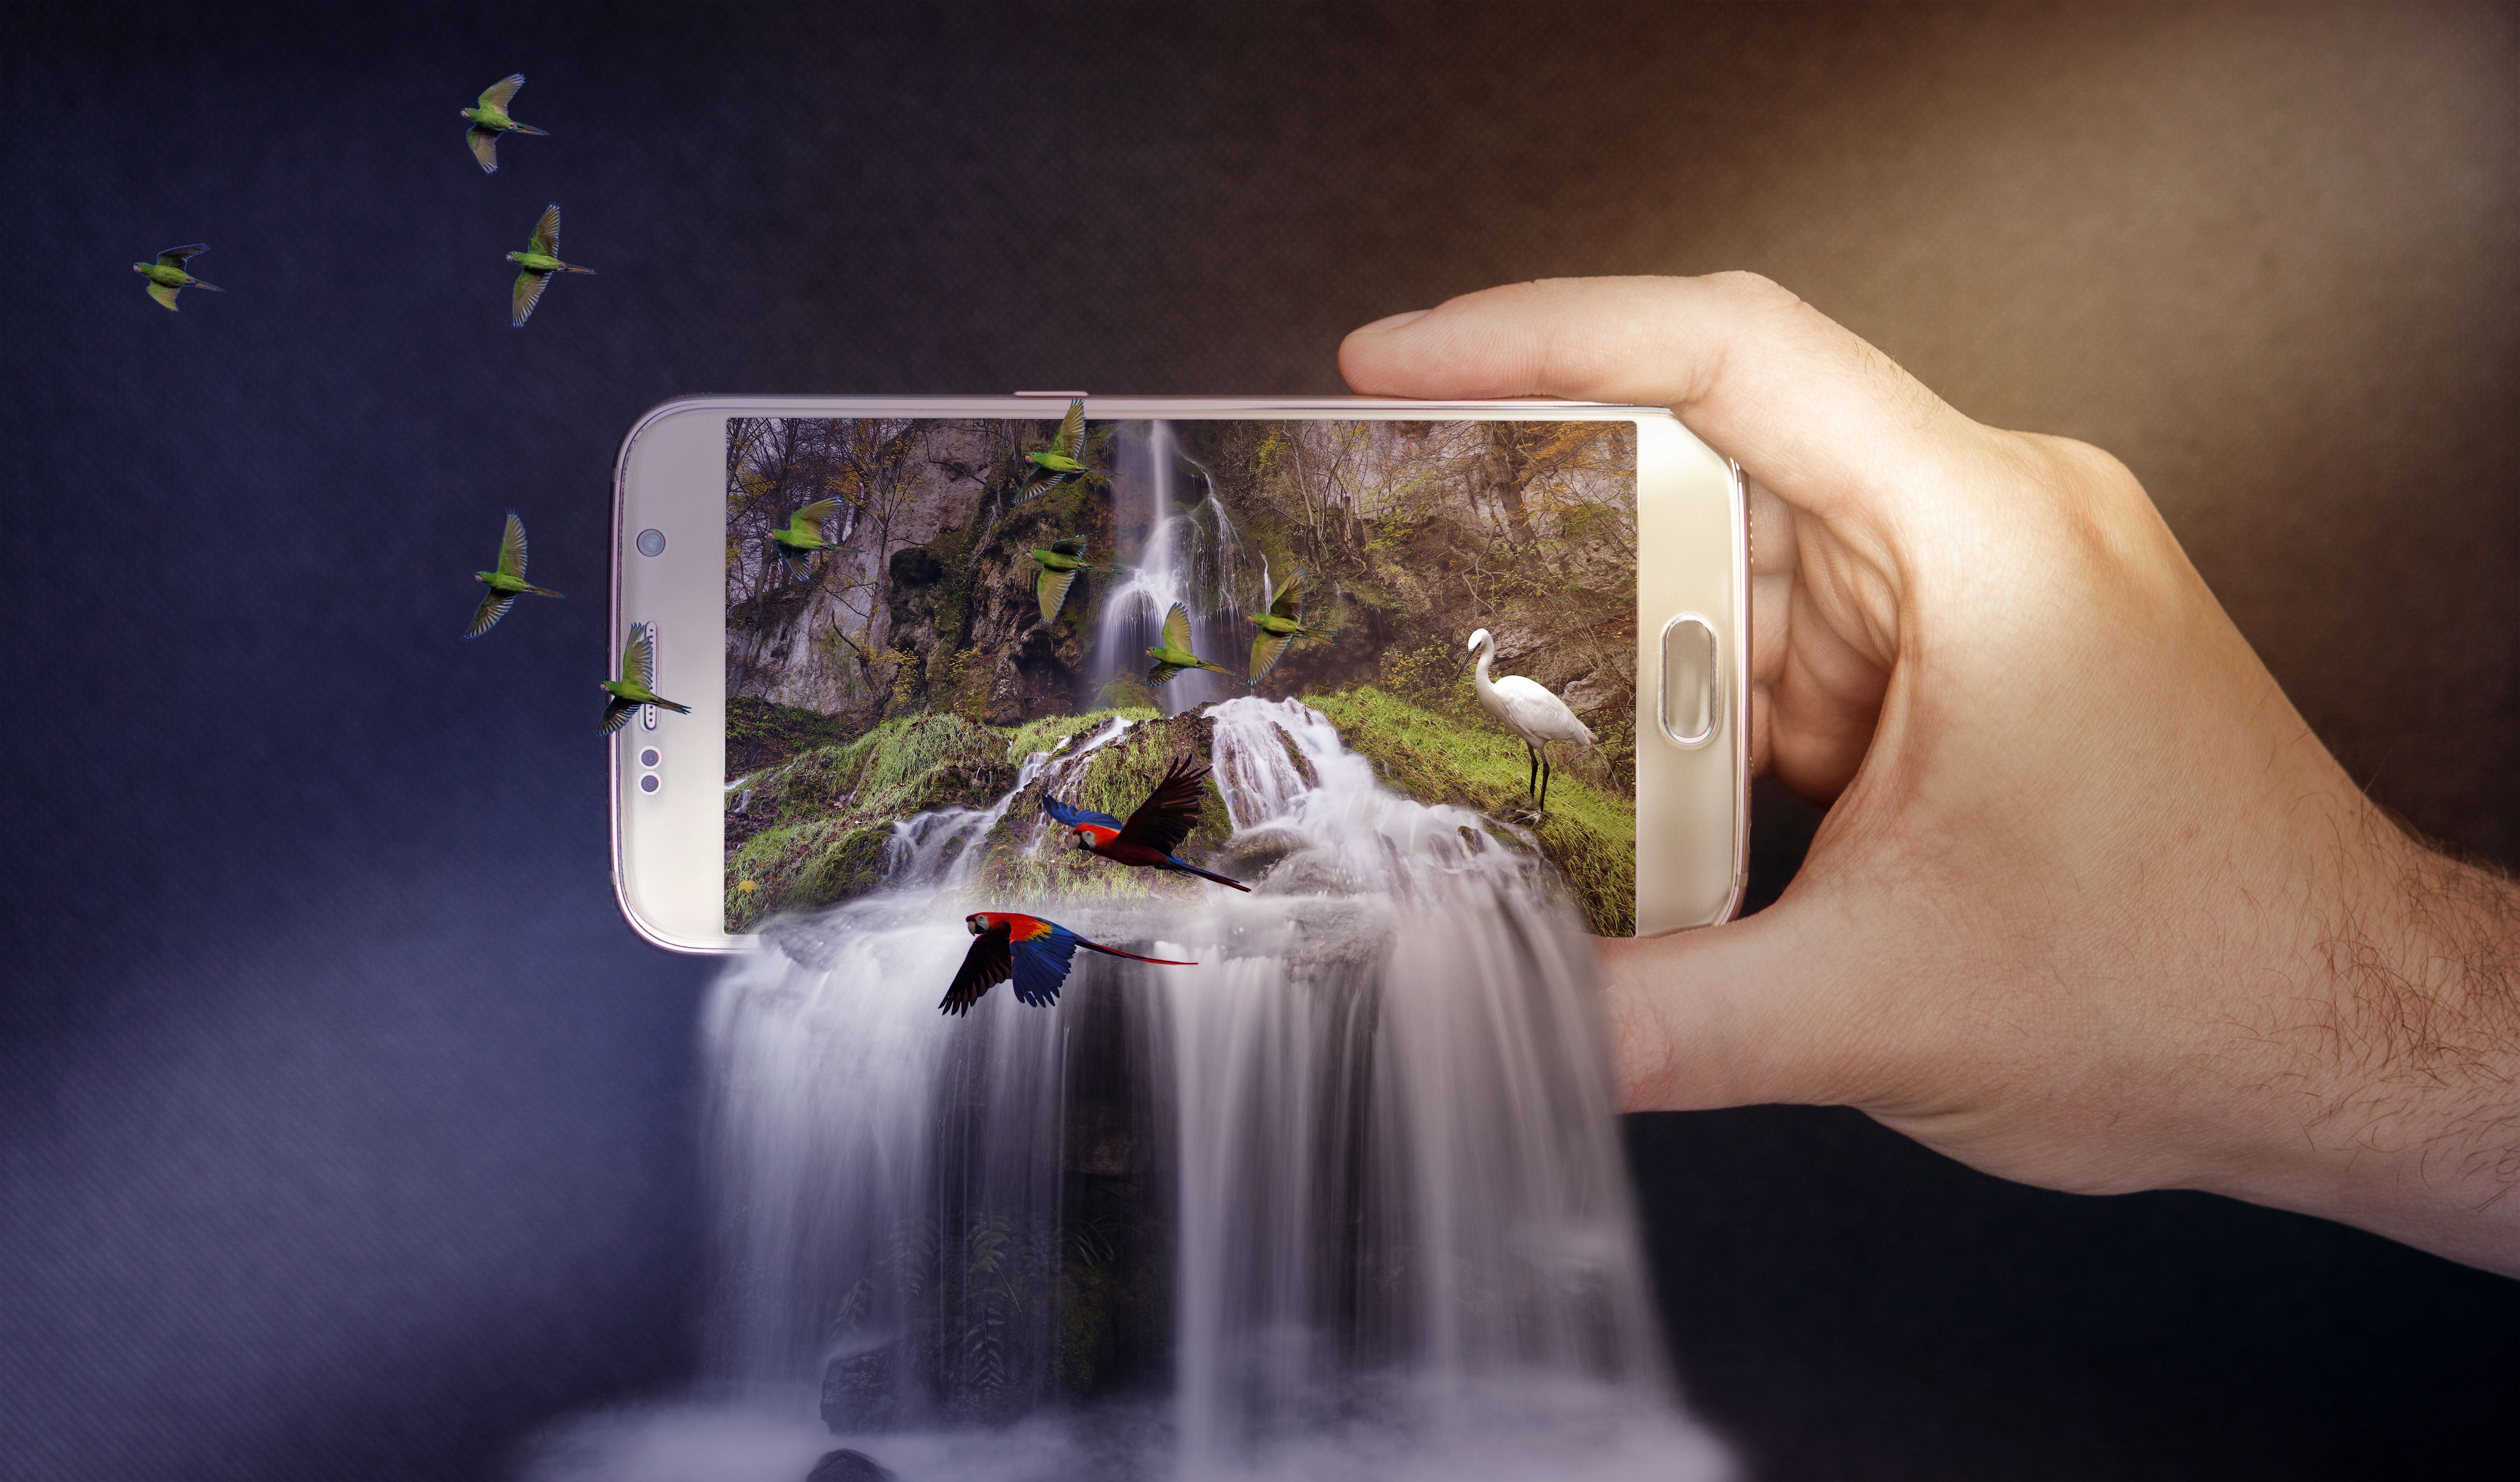 photography, manipulation, bird, hand, phone, smartphone, waterfall